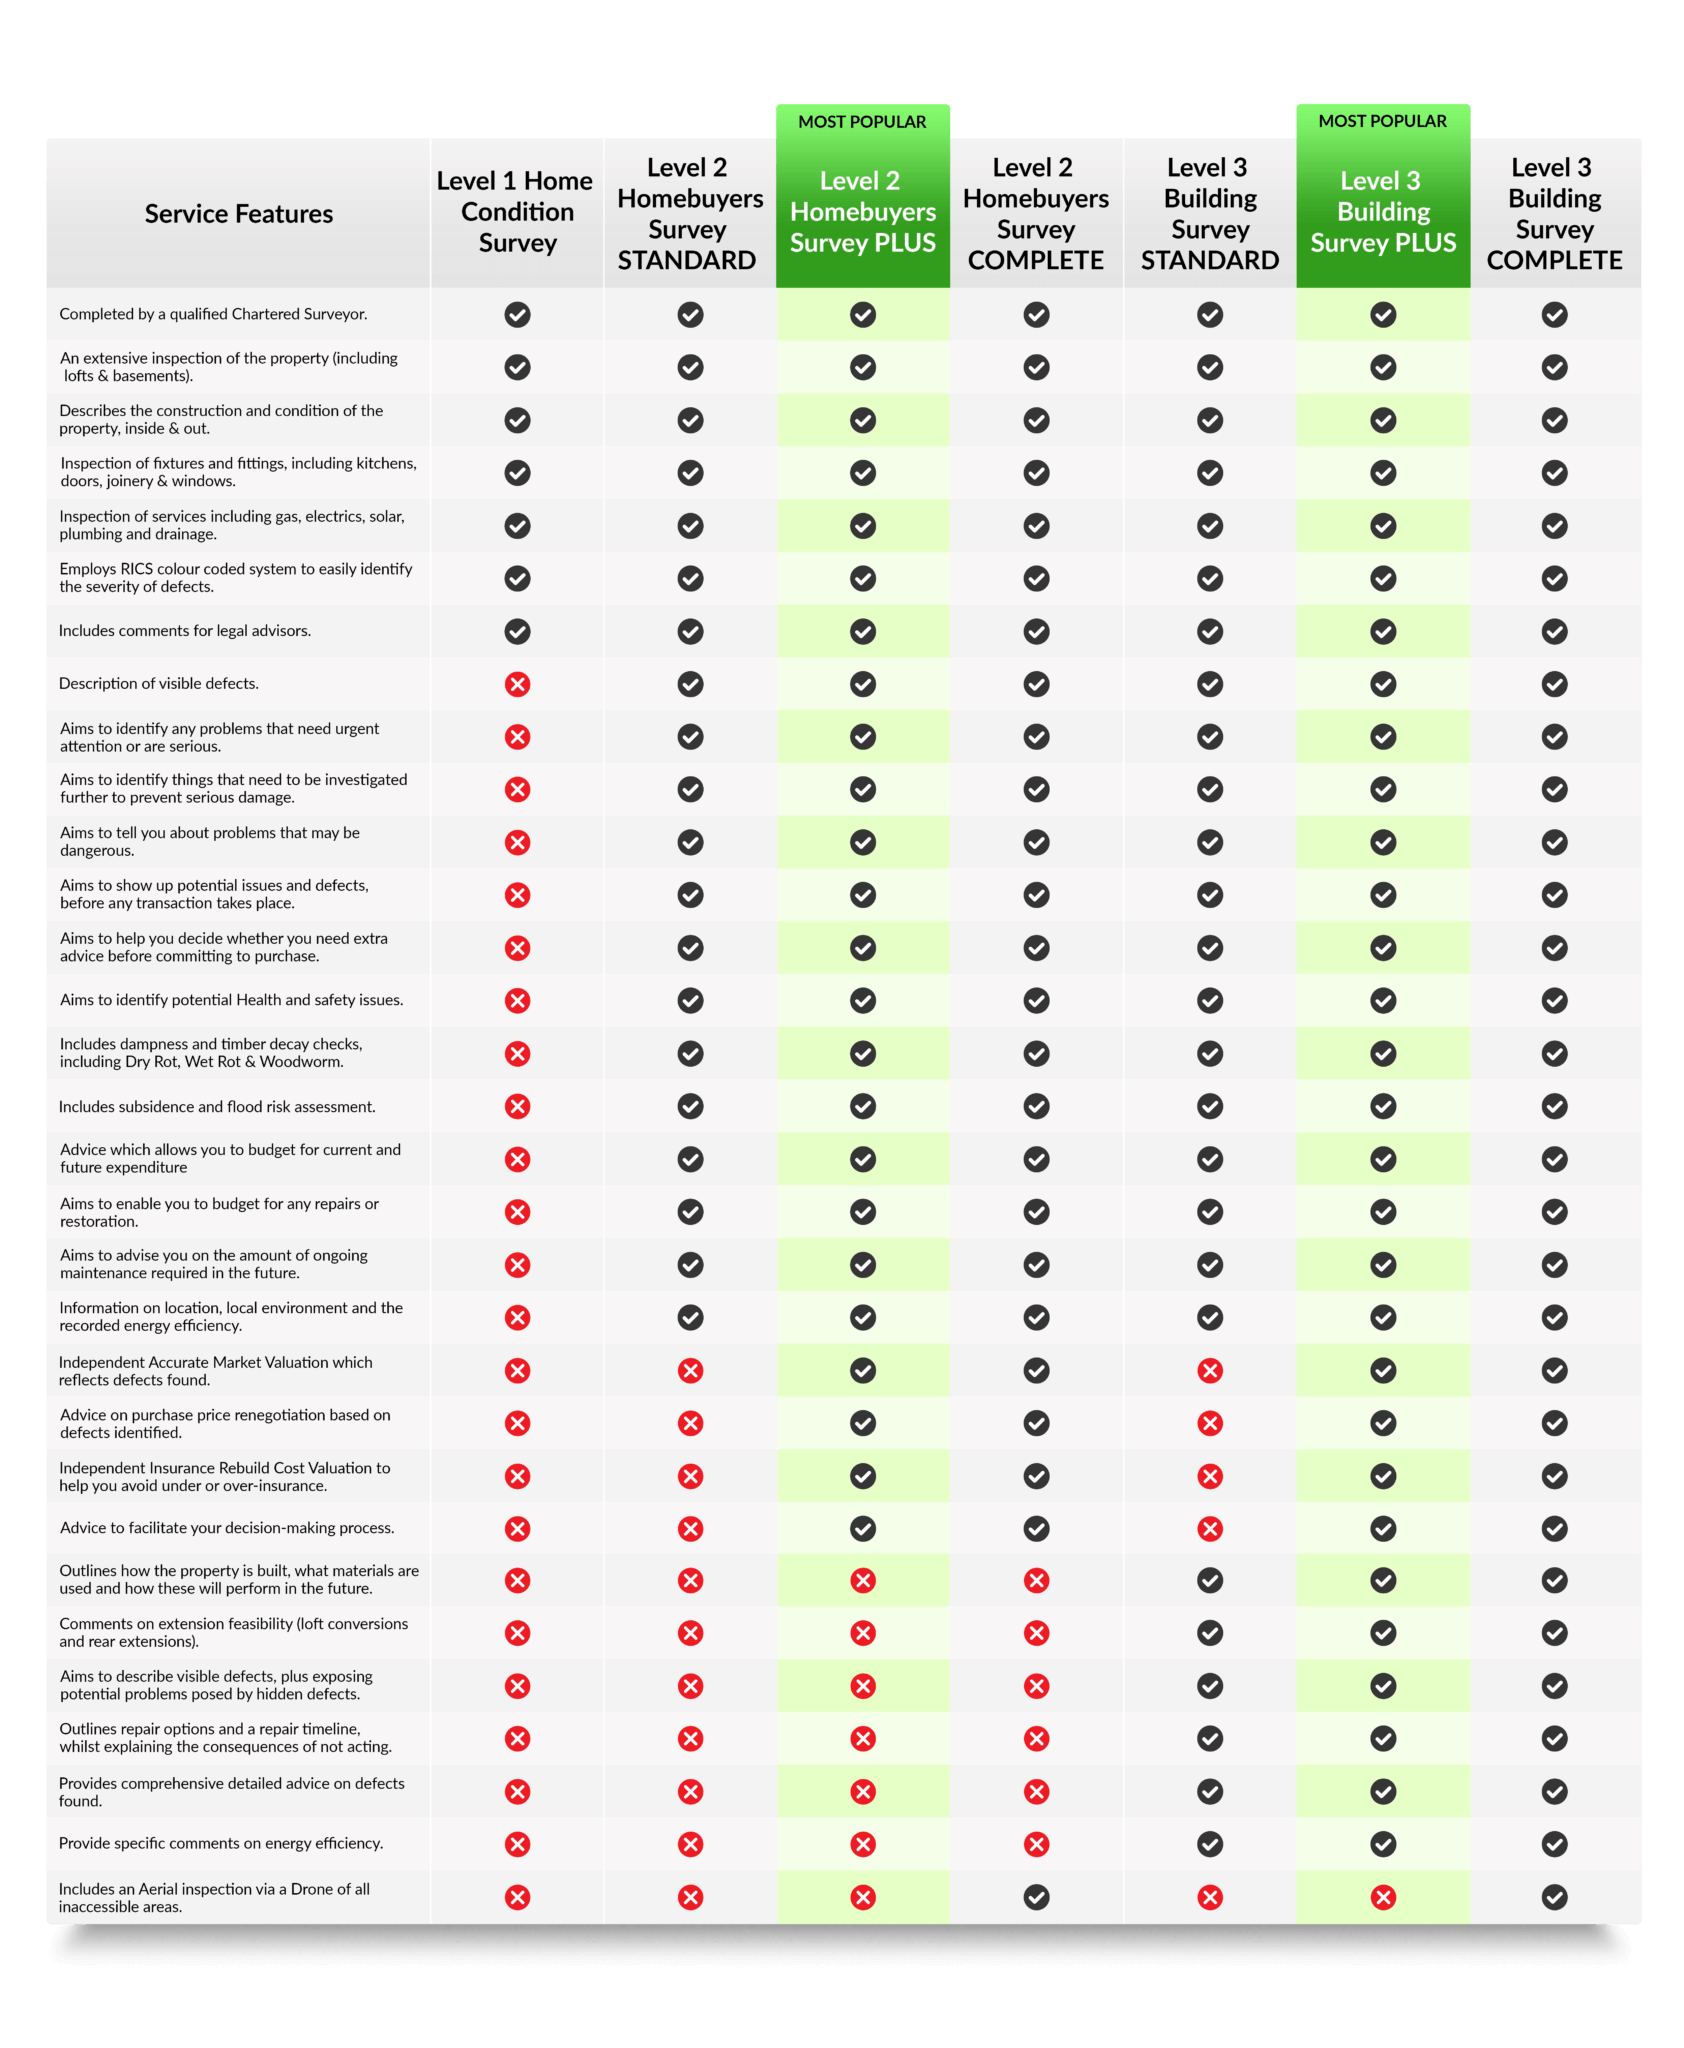 All Survey Comparison